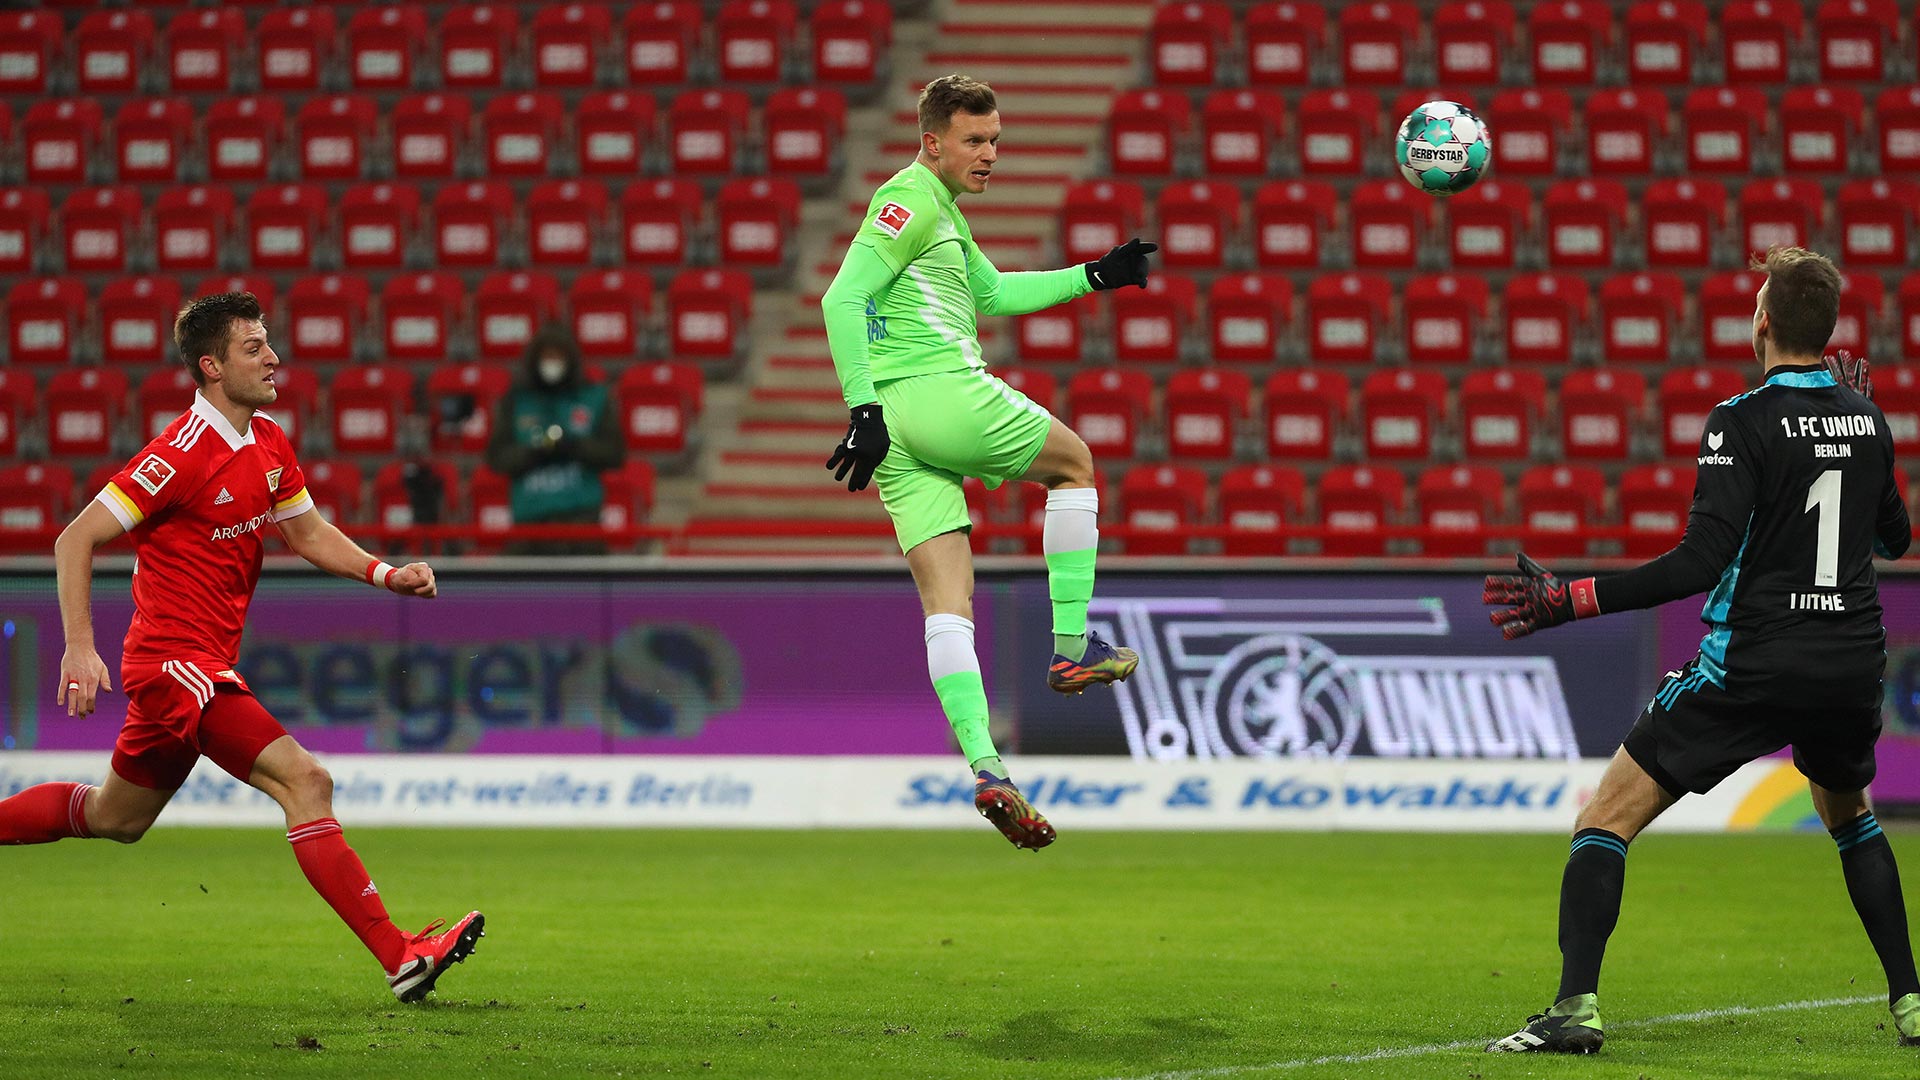 Der VfL Wolfsburg Spieler Gerhardt springt in die Luft um den Ball zu erreichen.